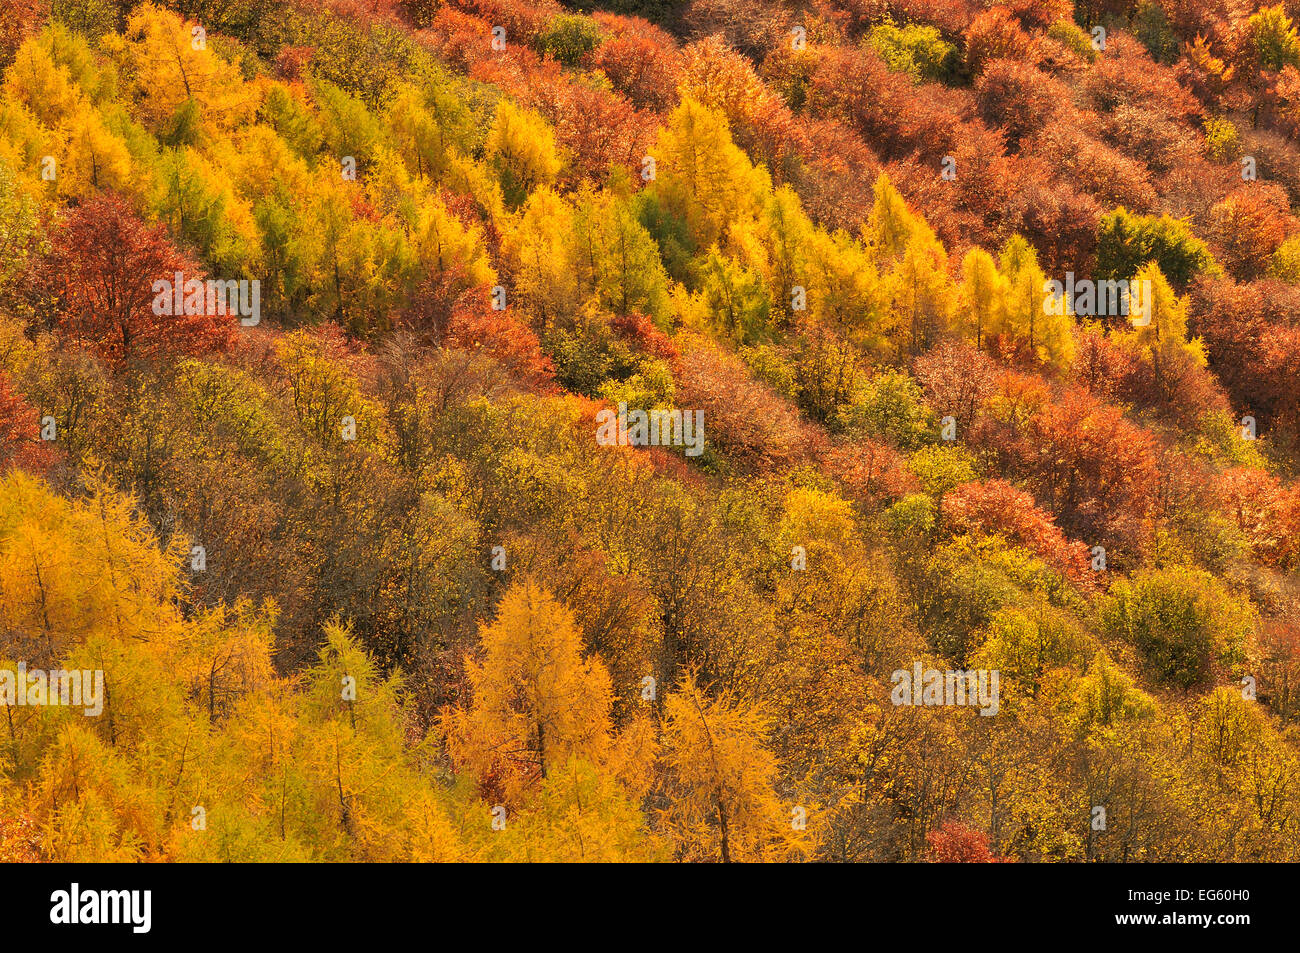 Close up of colorful forêt mixte à l'automne, de Kinnoull Hill Woodland Park, Perthshire, Écosse Novembre 2011. Banque D'Images